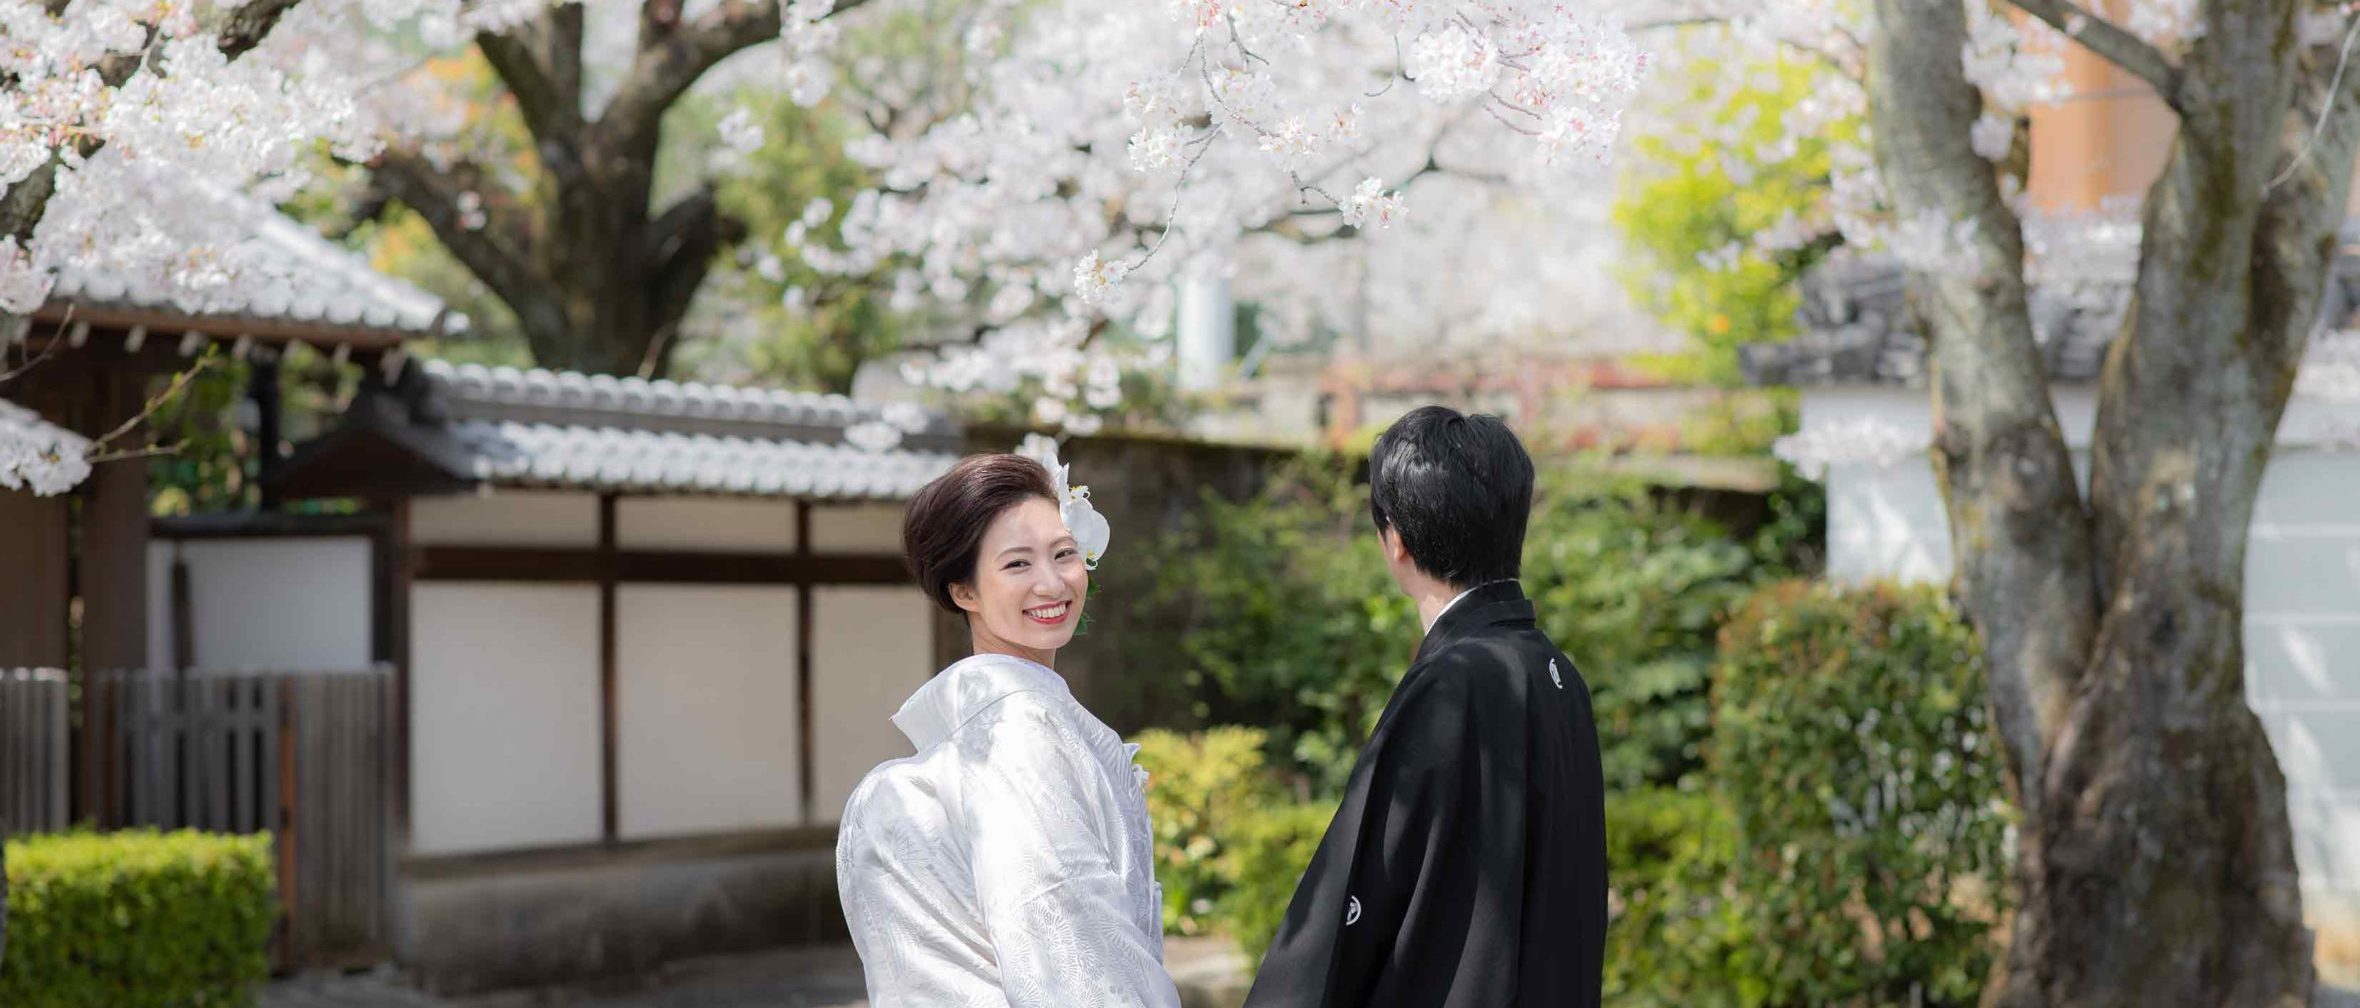 京都の満開の桜と白無垢姿の花嫁様